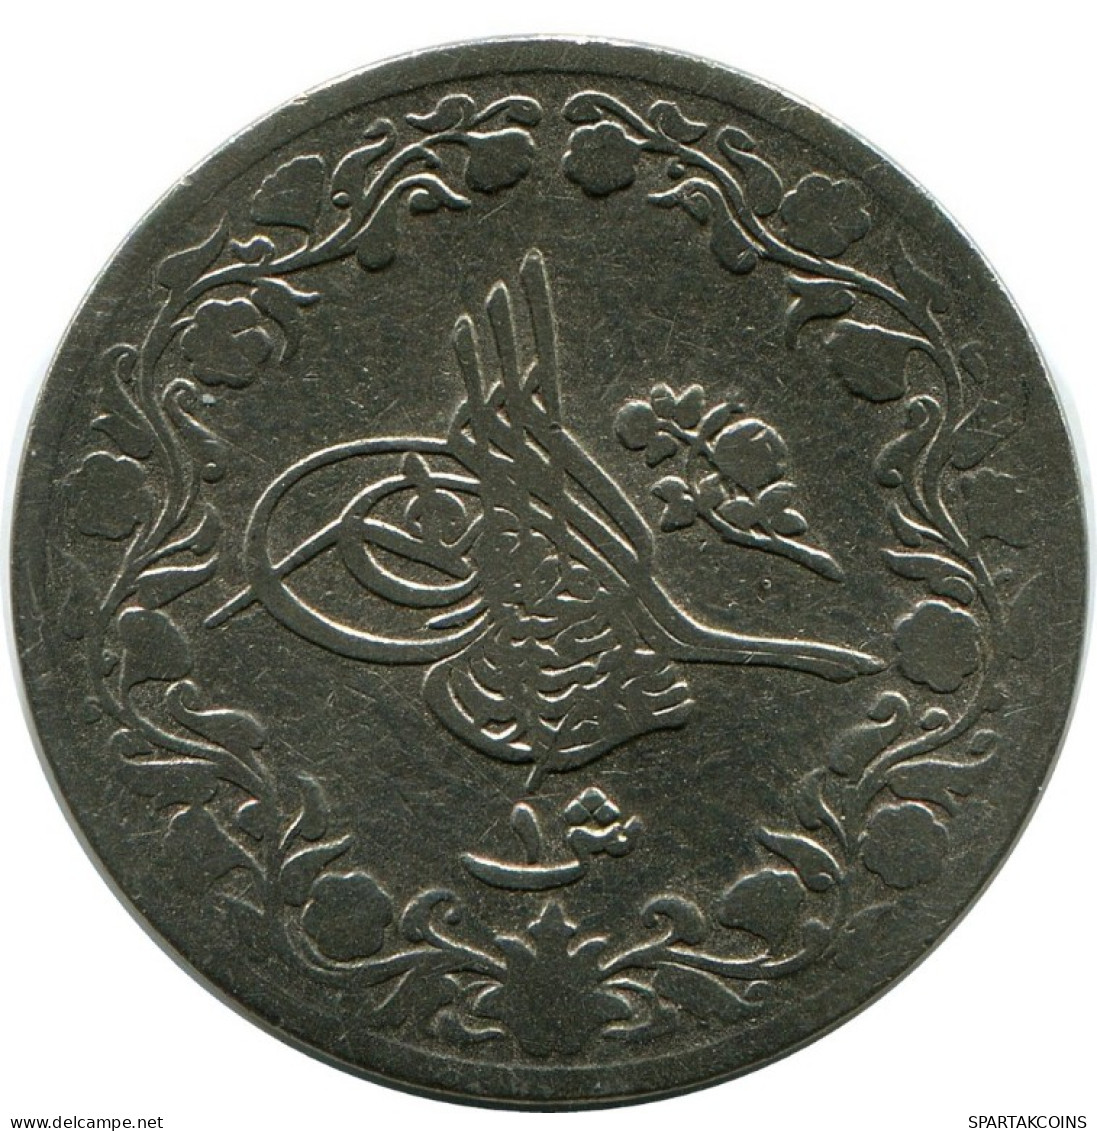 1 QIRSH 1899 EGYPT Islamic Coin #AH276.10.U.A - Aegypten